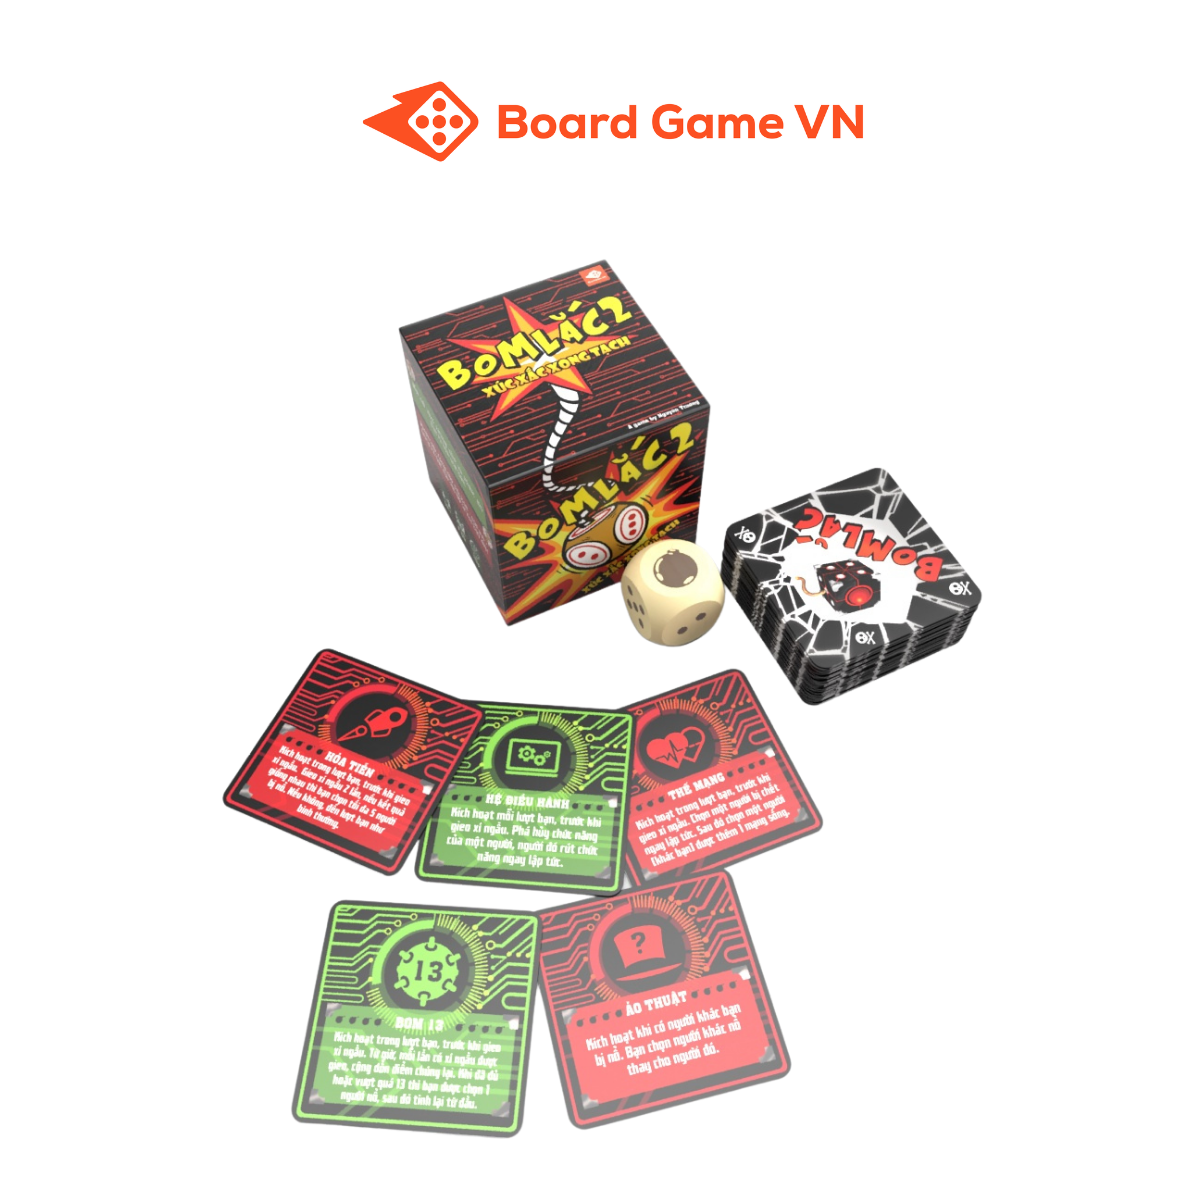 Bom Lắc 2 - Xúc Xắc Xong Tạch - Boardgame VN